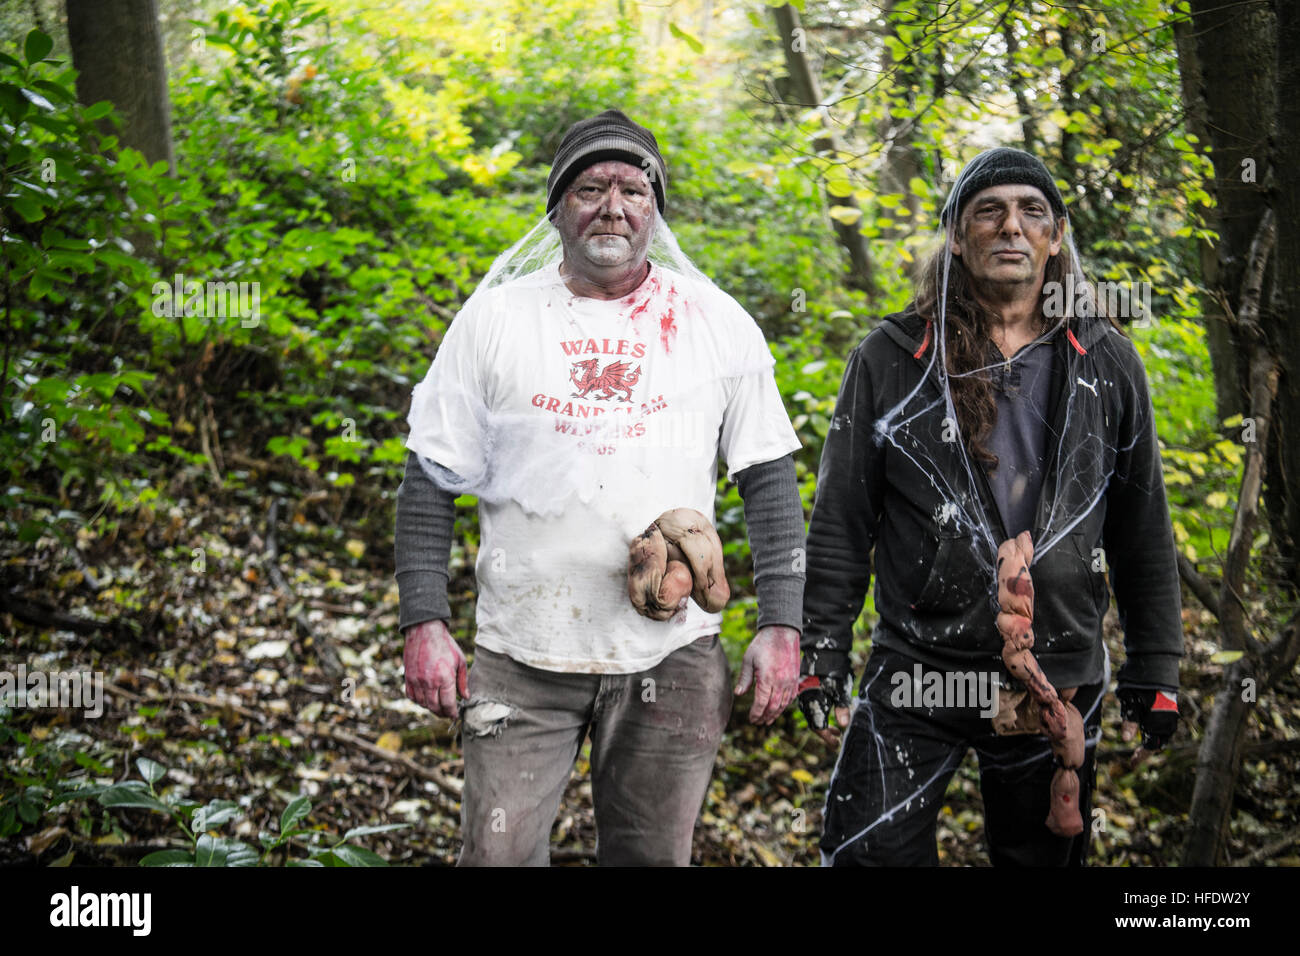 Menschen gekleidet und zusammengesetzt als Zombies in den Wäldern in einem "The Walking Dead Erfahrung" Live Action Rolle spielen (LARP)-Activity-Ereignisses an einem November-Nachmittag in Wäldern in der Nähe von Aberystwyth Wales UK Stockfoto